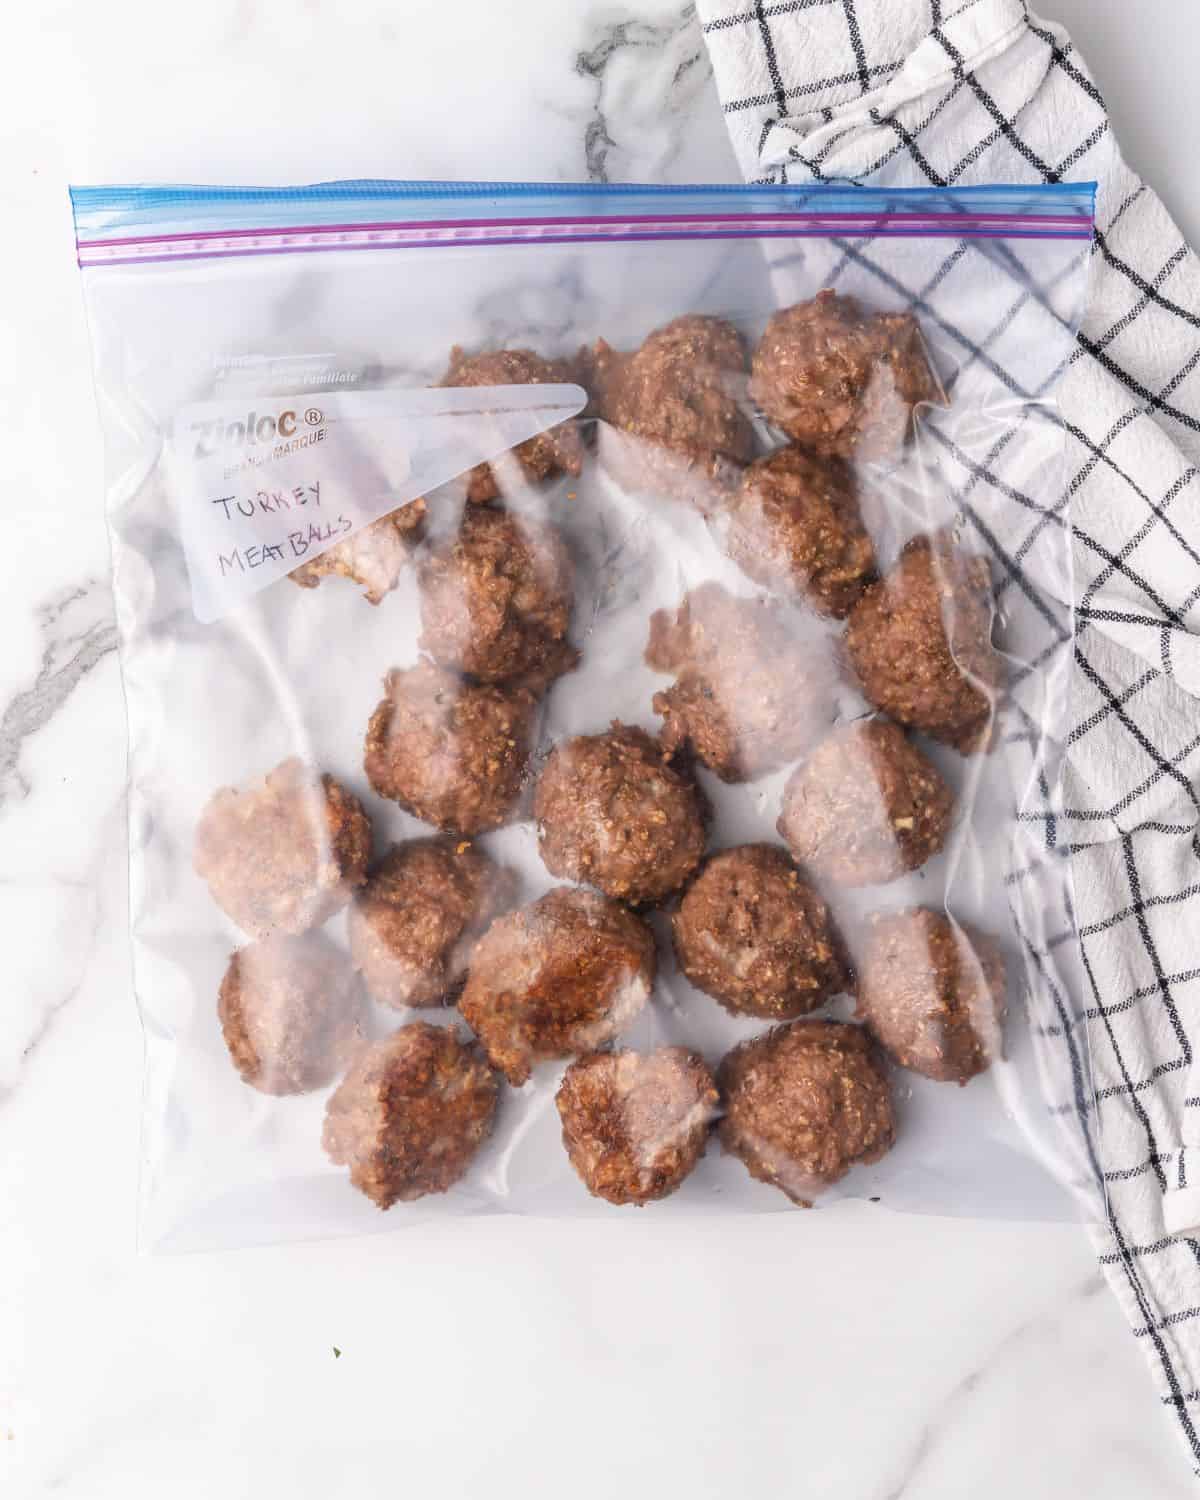 turkey meatballs in a freezer bag.